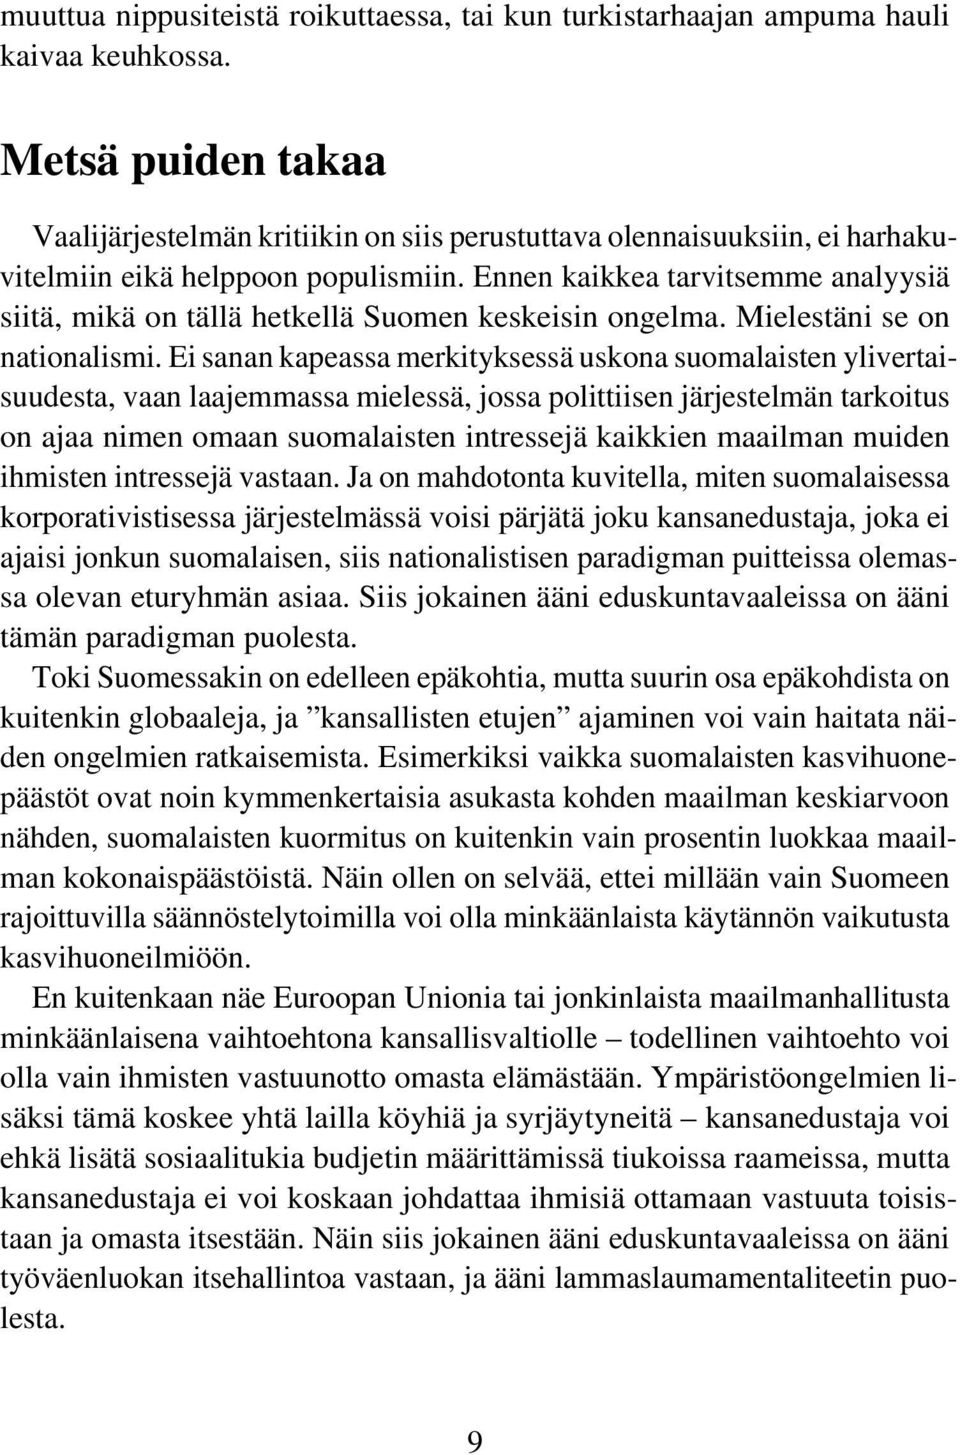 Ennen kaikkea tarvitsemme analyysiä siitä, mikä on tällä hetkellä Suomen keskeisin ongelma. Mielestäni se on nationalismi.